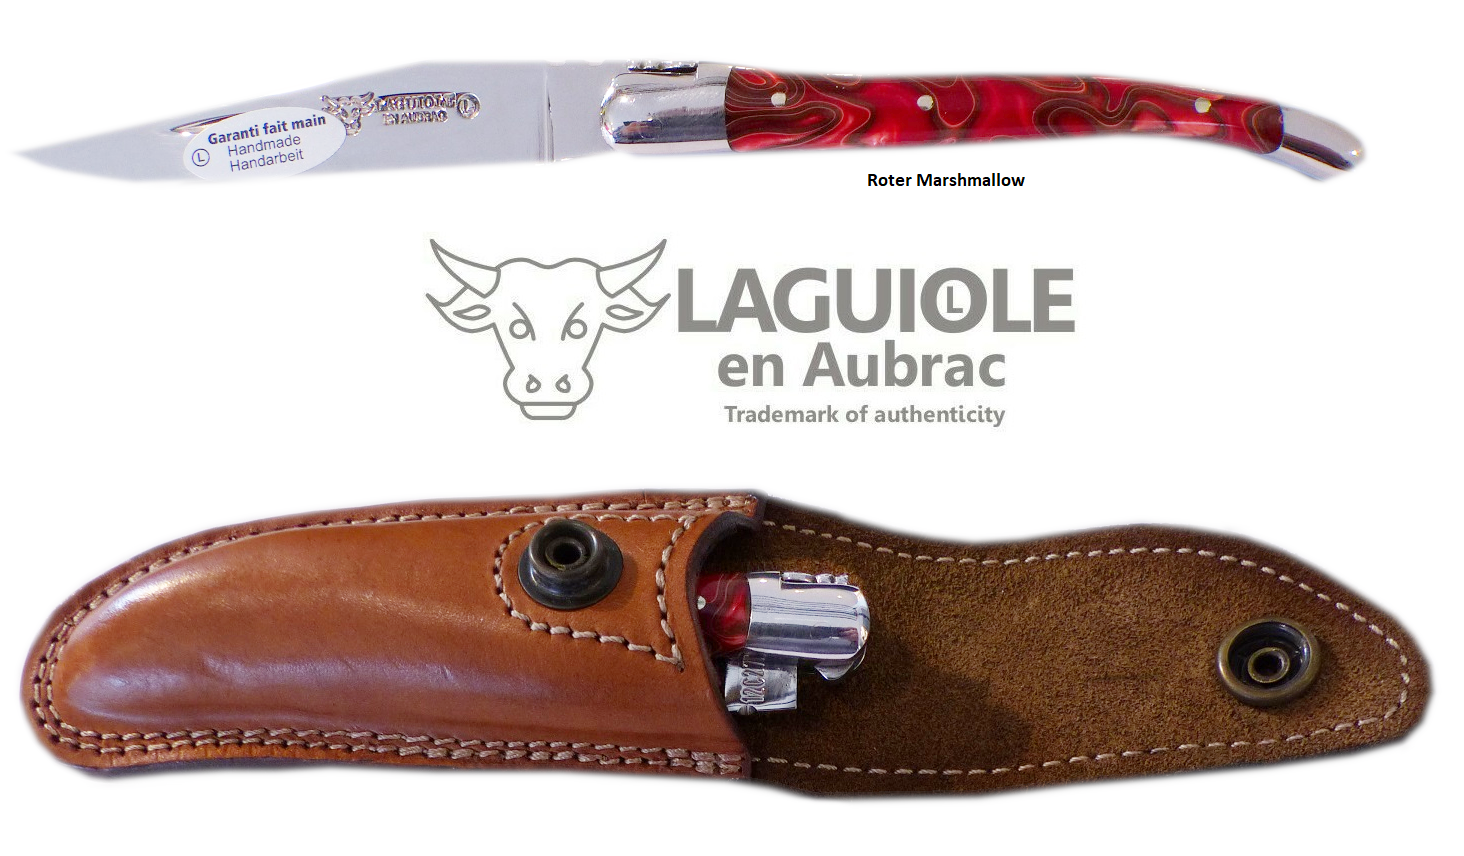 LAGUIOLE en Aubrac Original Taschenmesser Griffschalen aus Rotem Marshmallow